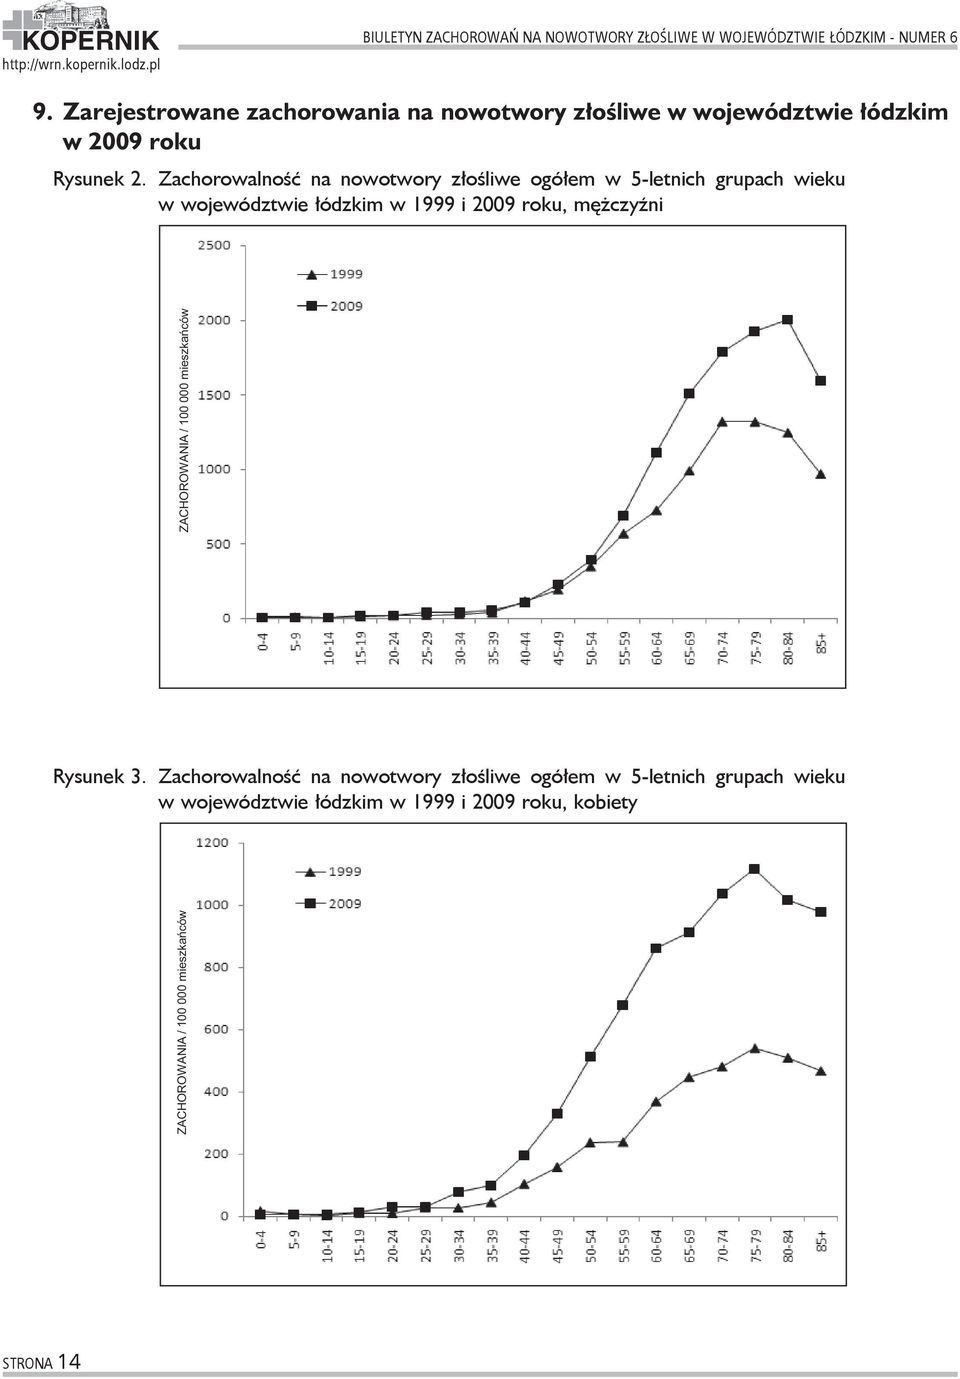 Zachorowalność na nowotwory złośliwe ogółem w 5-letnich grupach wieku w województwie łódzkim w 1999 i 2009 roku, mężczyźni